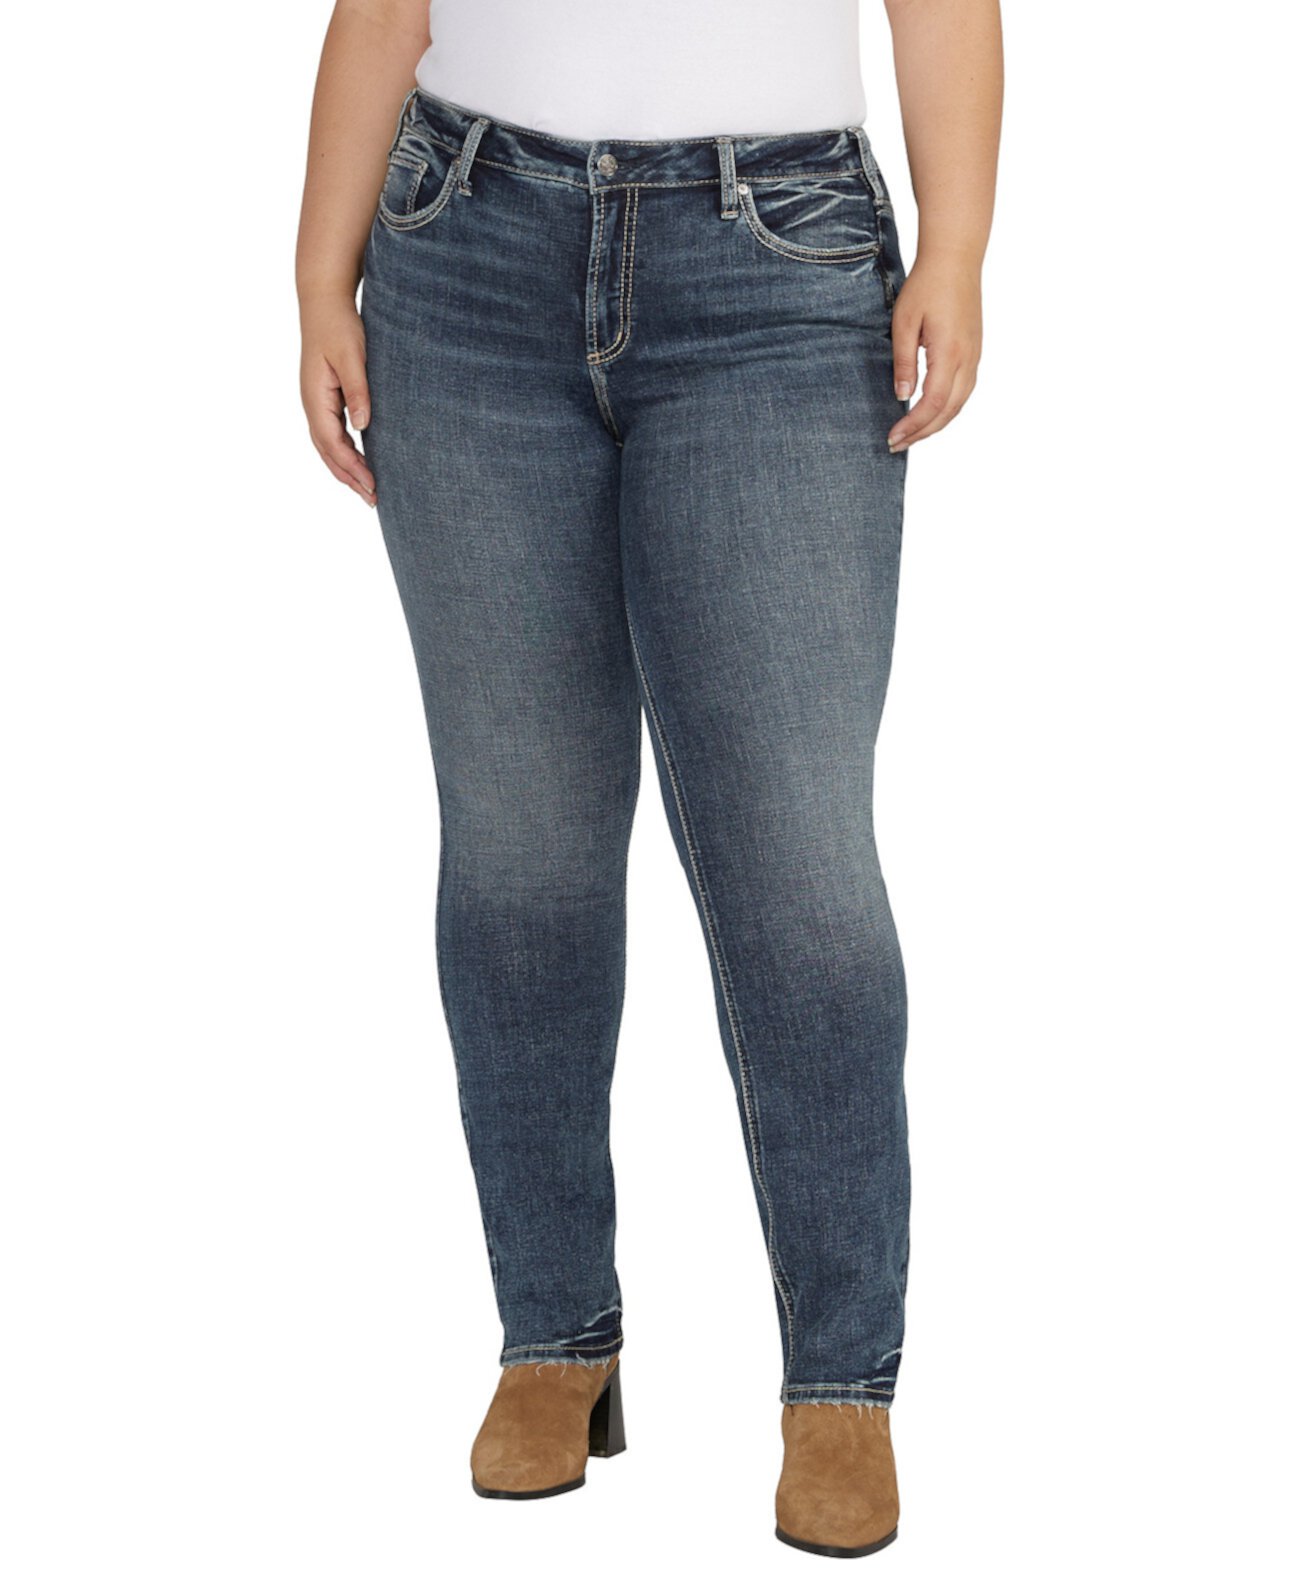 Прямые джинсы Suki со средней посадкой и пышным кроем размера плюс Silver Jeans Co.